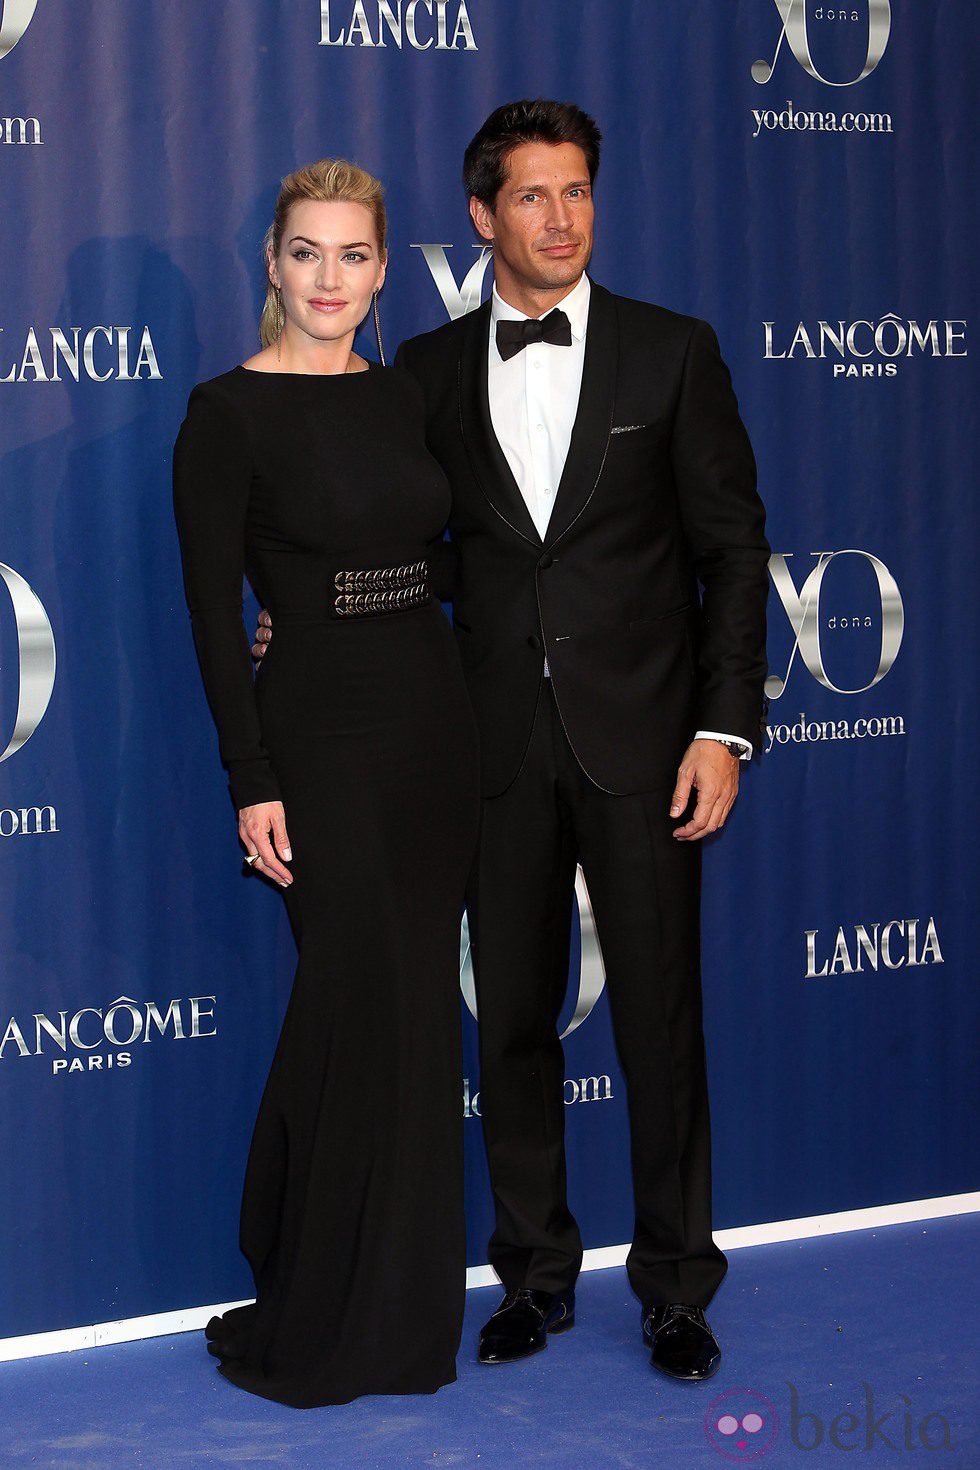 Kate Winslet y Jaime Cantizano en los Premios Yo Dona 2011